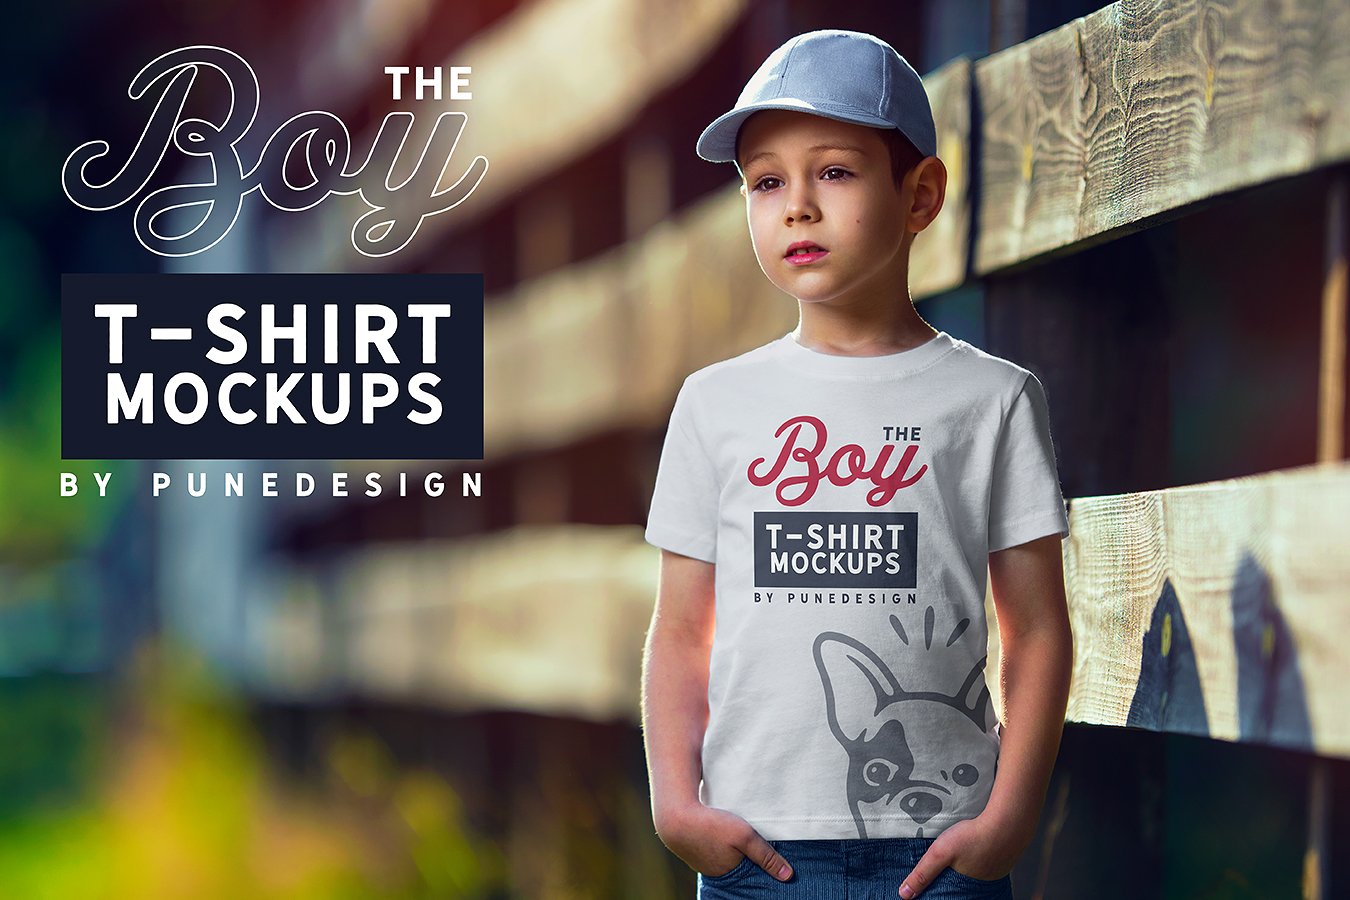 Boy T-Shirt Mock-Up Set cover image.